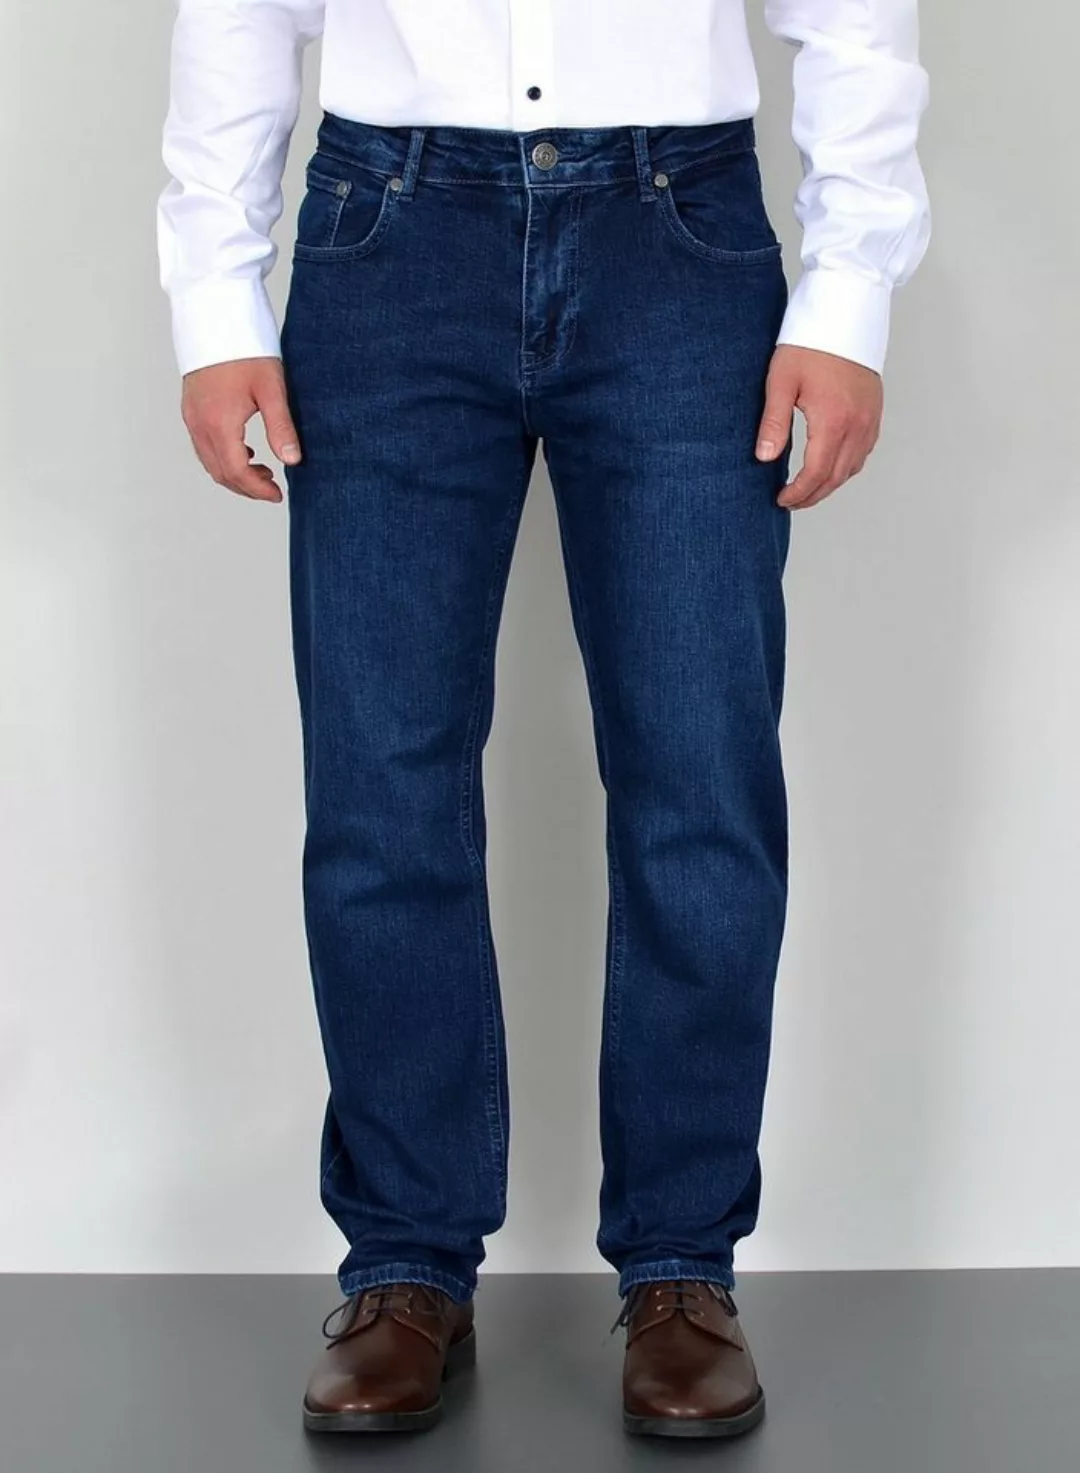 ADAM JEANS Straight-Jeans F100 Herren Straight Fit Jeans Hose Regular, bis günstig online kaufen